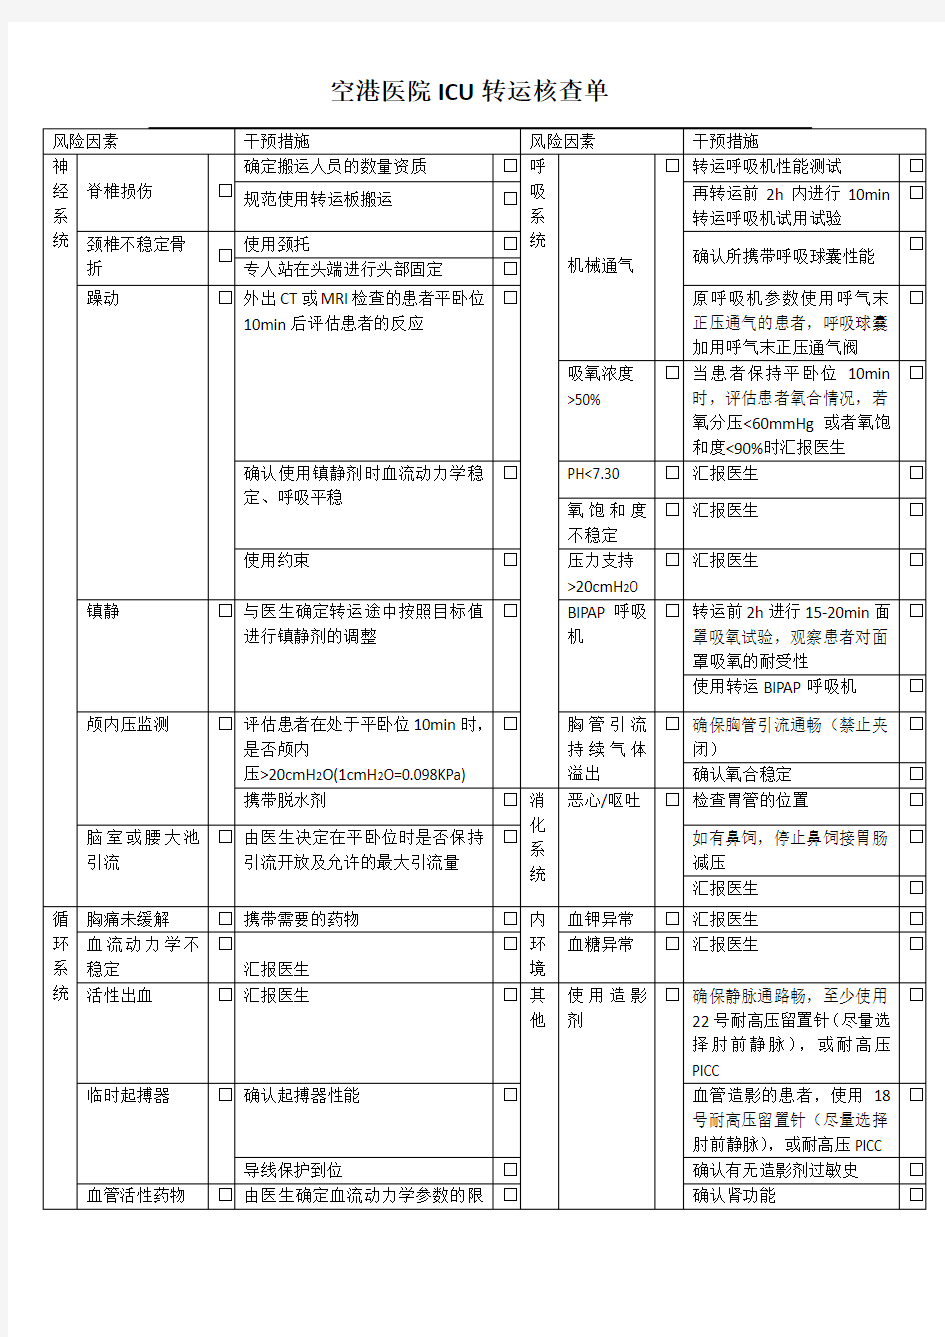 中国重症患者转运指南(2010)提炼表 中华护理杂志发表整理版